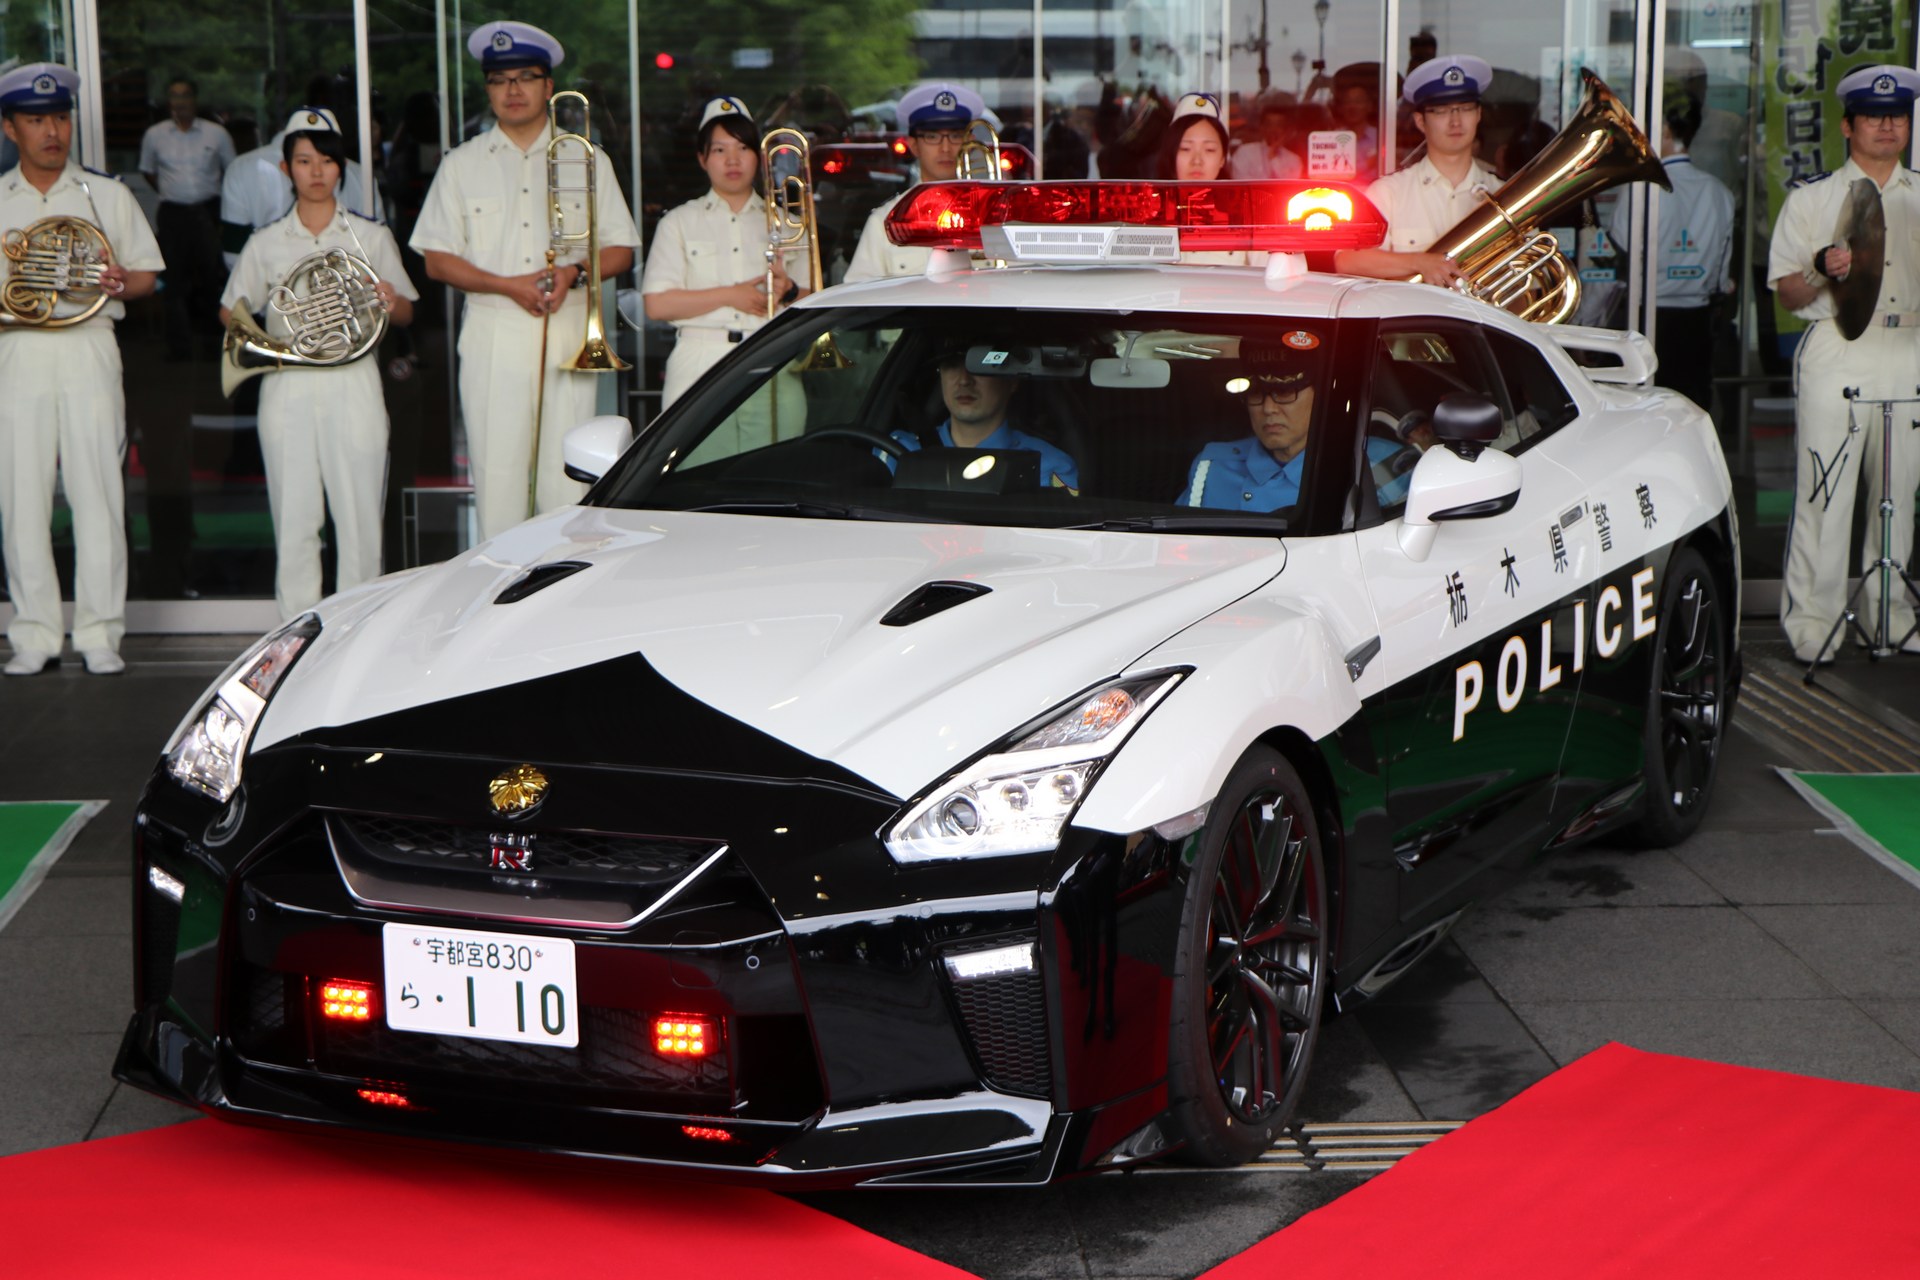 "بالصور" نيسان GT-R تدخل الخدمة رسميا بأسطول الشرطة اليابانية 41